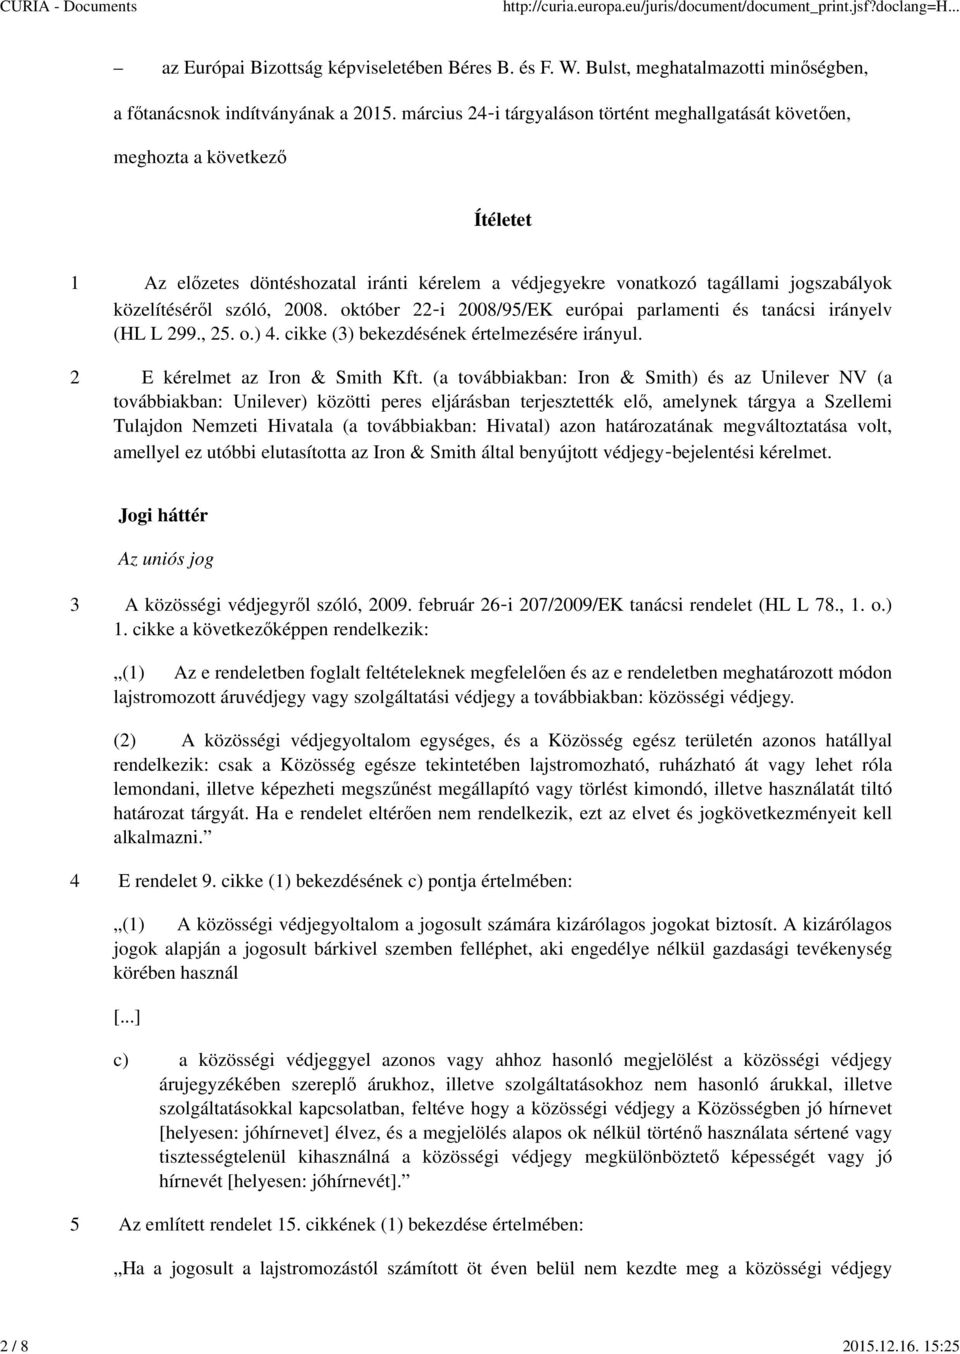 2008. október 22 i 2008/95/EK európai parlamenti és tanácsi irányelv (HL L 299., 25. o.) 4. cikke (3) bekezdésének értelmezésére irányul. 2 E kérelmet az Iron & Smith Kft.